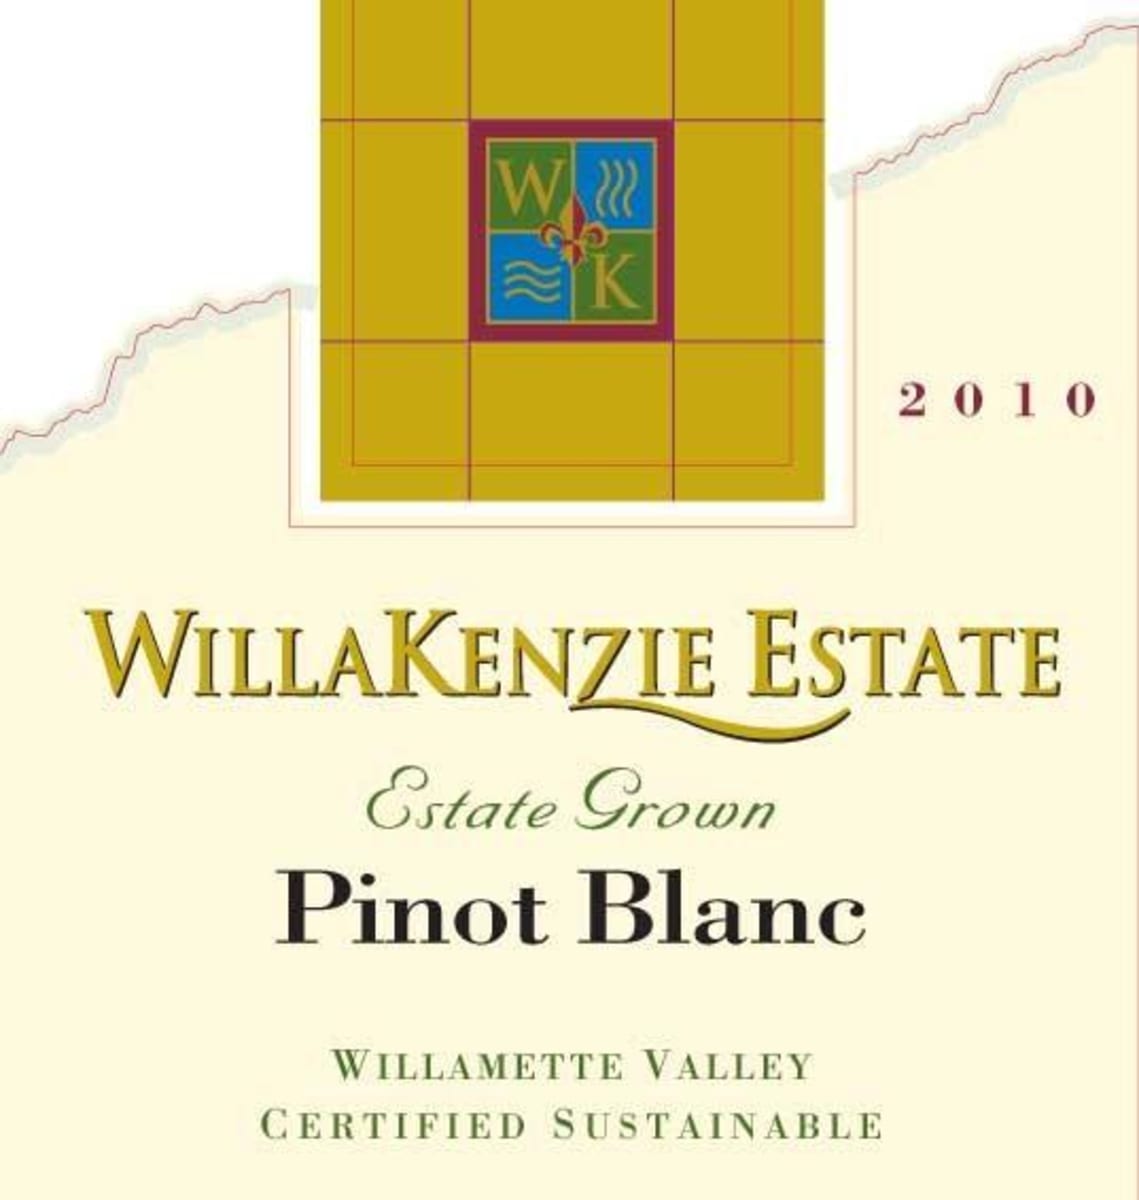 WillaKenzie Estate Estate Grown Pinot Blanc 2010 Front Label